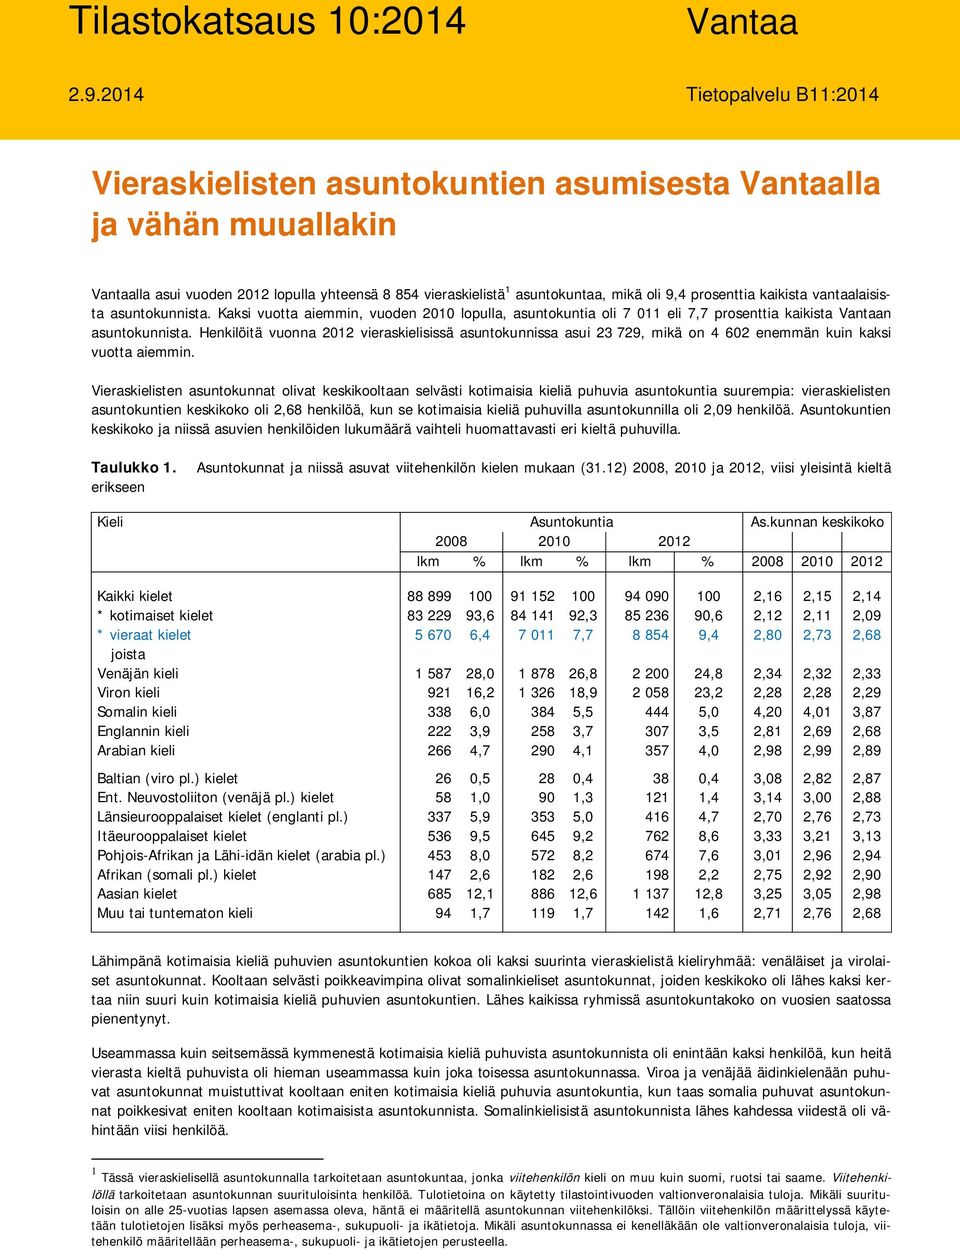 prosenttia kaikista vantaalaisista asuntokunnista. Kaksi vuotta aiemmin, vuoden 2010 lopulla, asuntokuntia oli 7 011 eli 7,7 prosenttia kaikista Vantaan asuntokunnista.